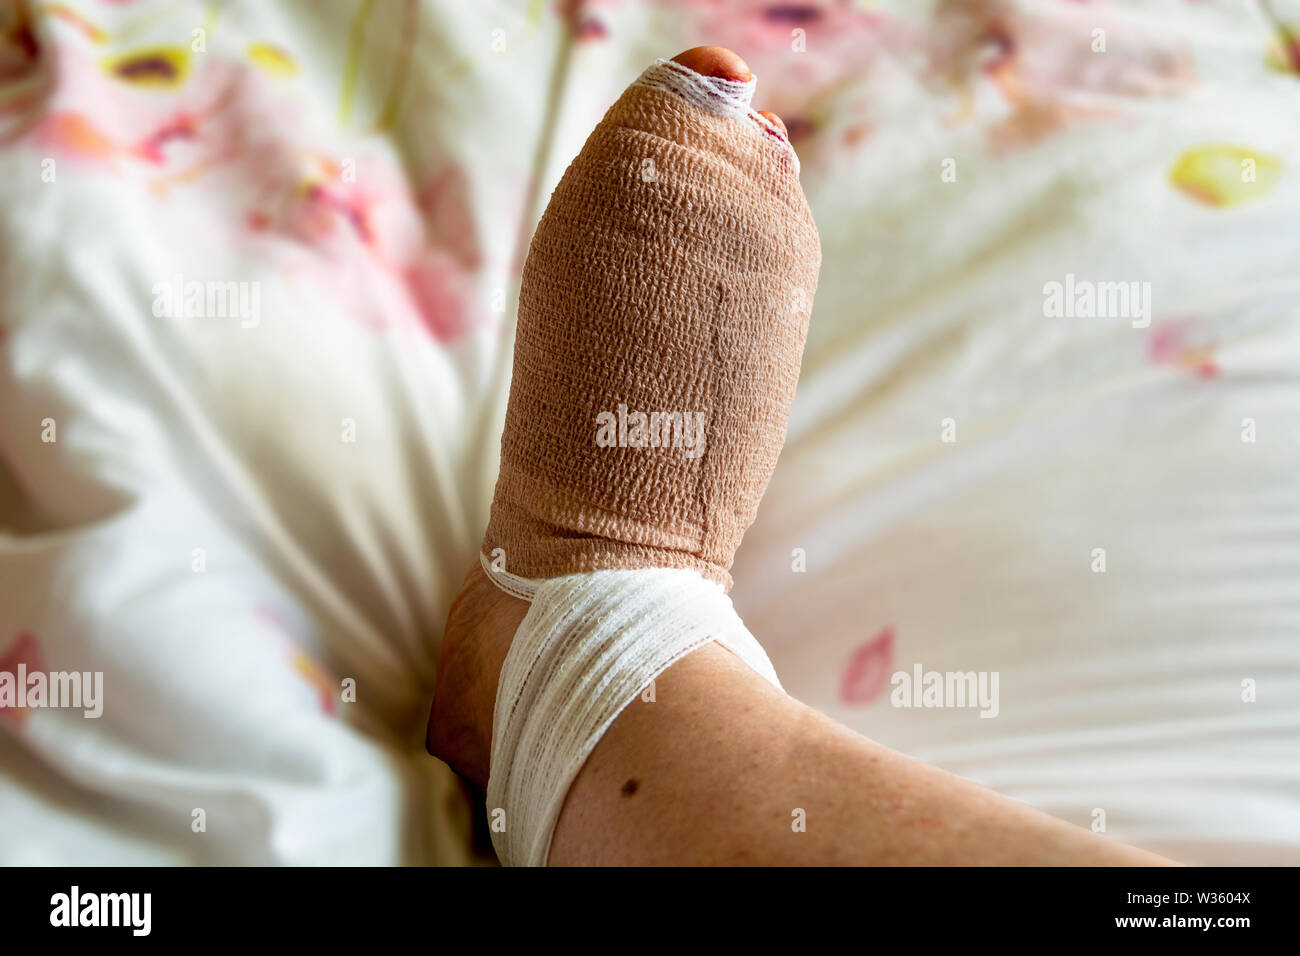 Piede bendato poche ore dopo bunion e chirurgia hammertoe sul piede destro di una donna nel suo 60's. Primo giorno di chirurgia del piede. Foto Stock